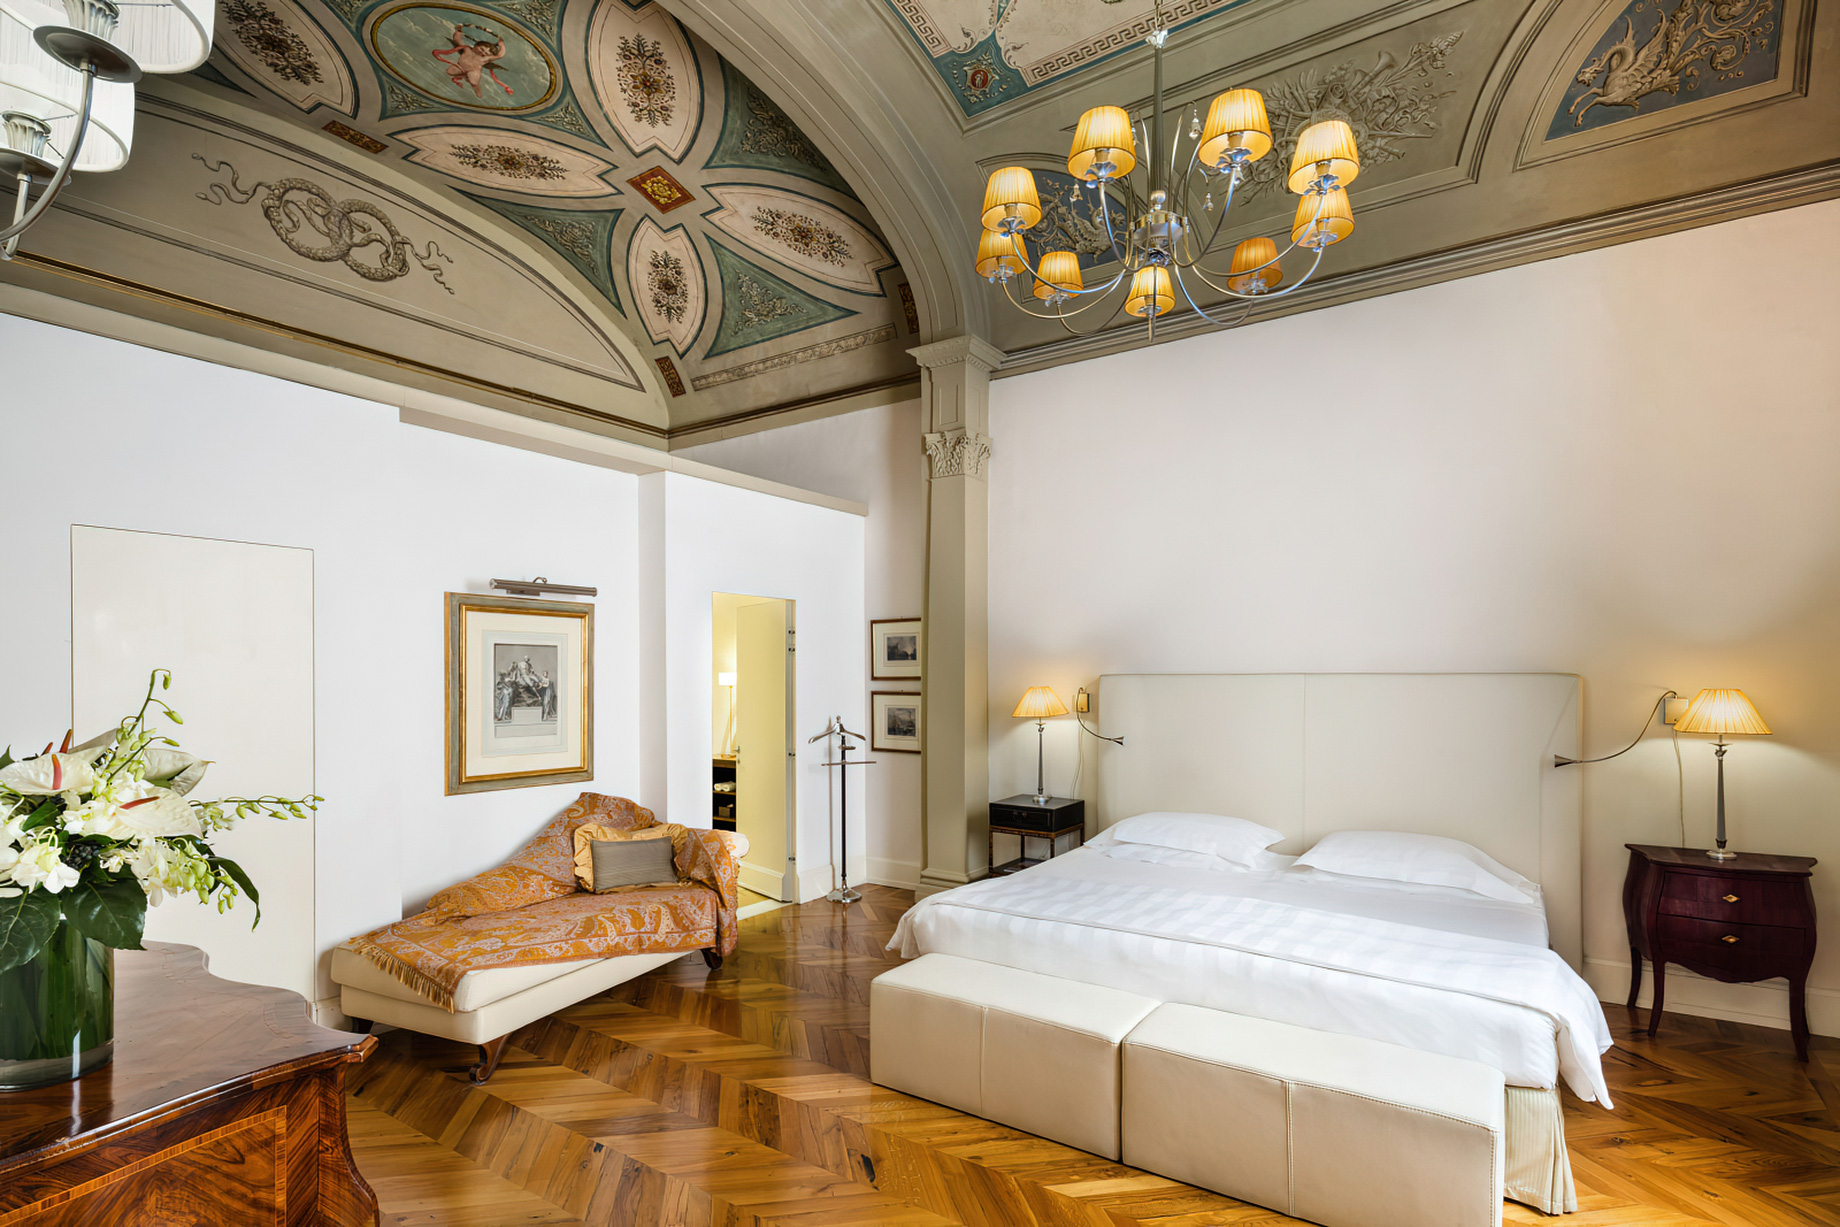 Relais Santa Croce By Baglioni Hotels & Resorts – Florence, Italy – Santa Croce Royal Bedroom